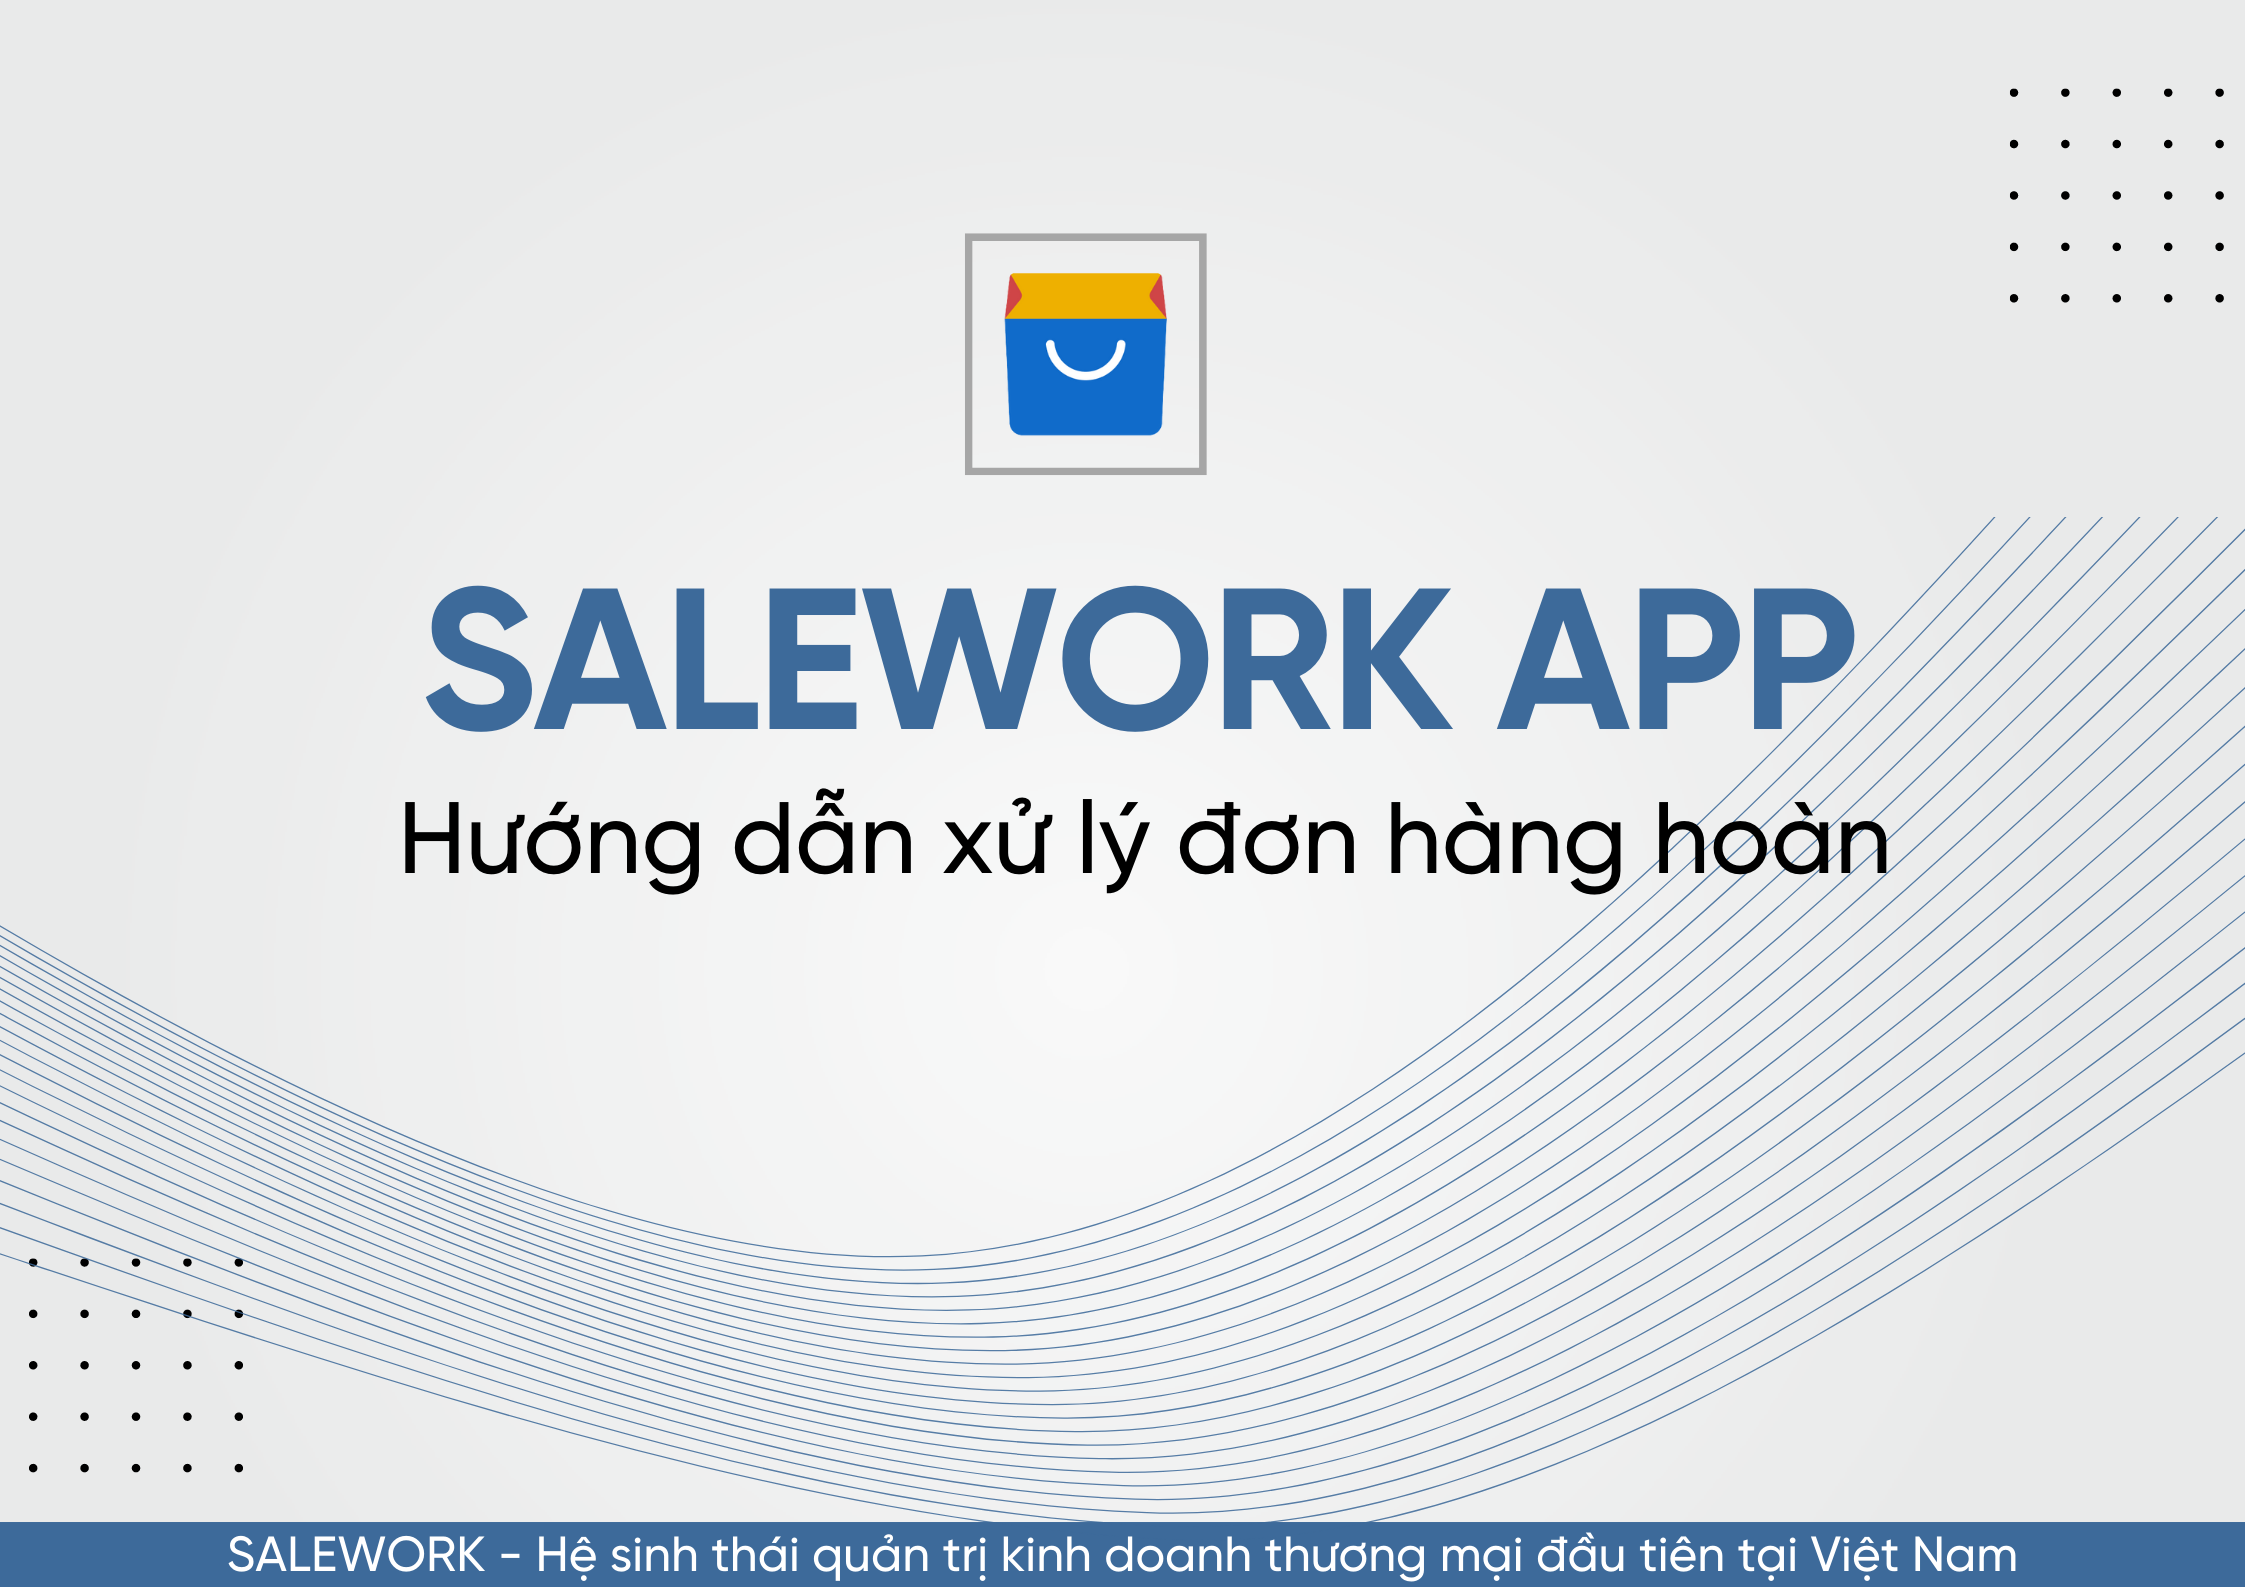 Hướng dẫn xử lý đơn hàng hoàn trên Salework mobile - 10